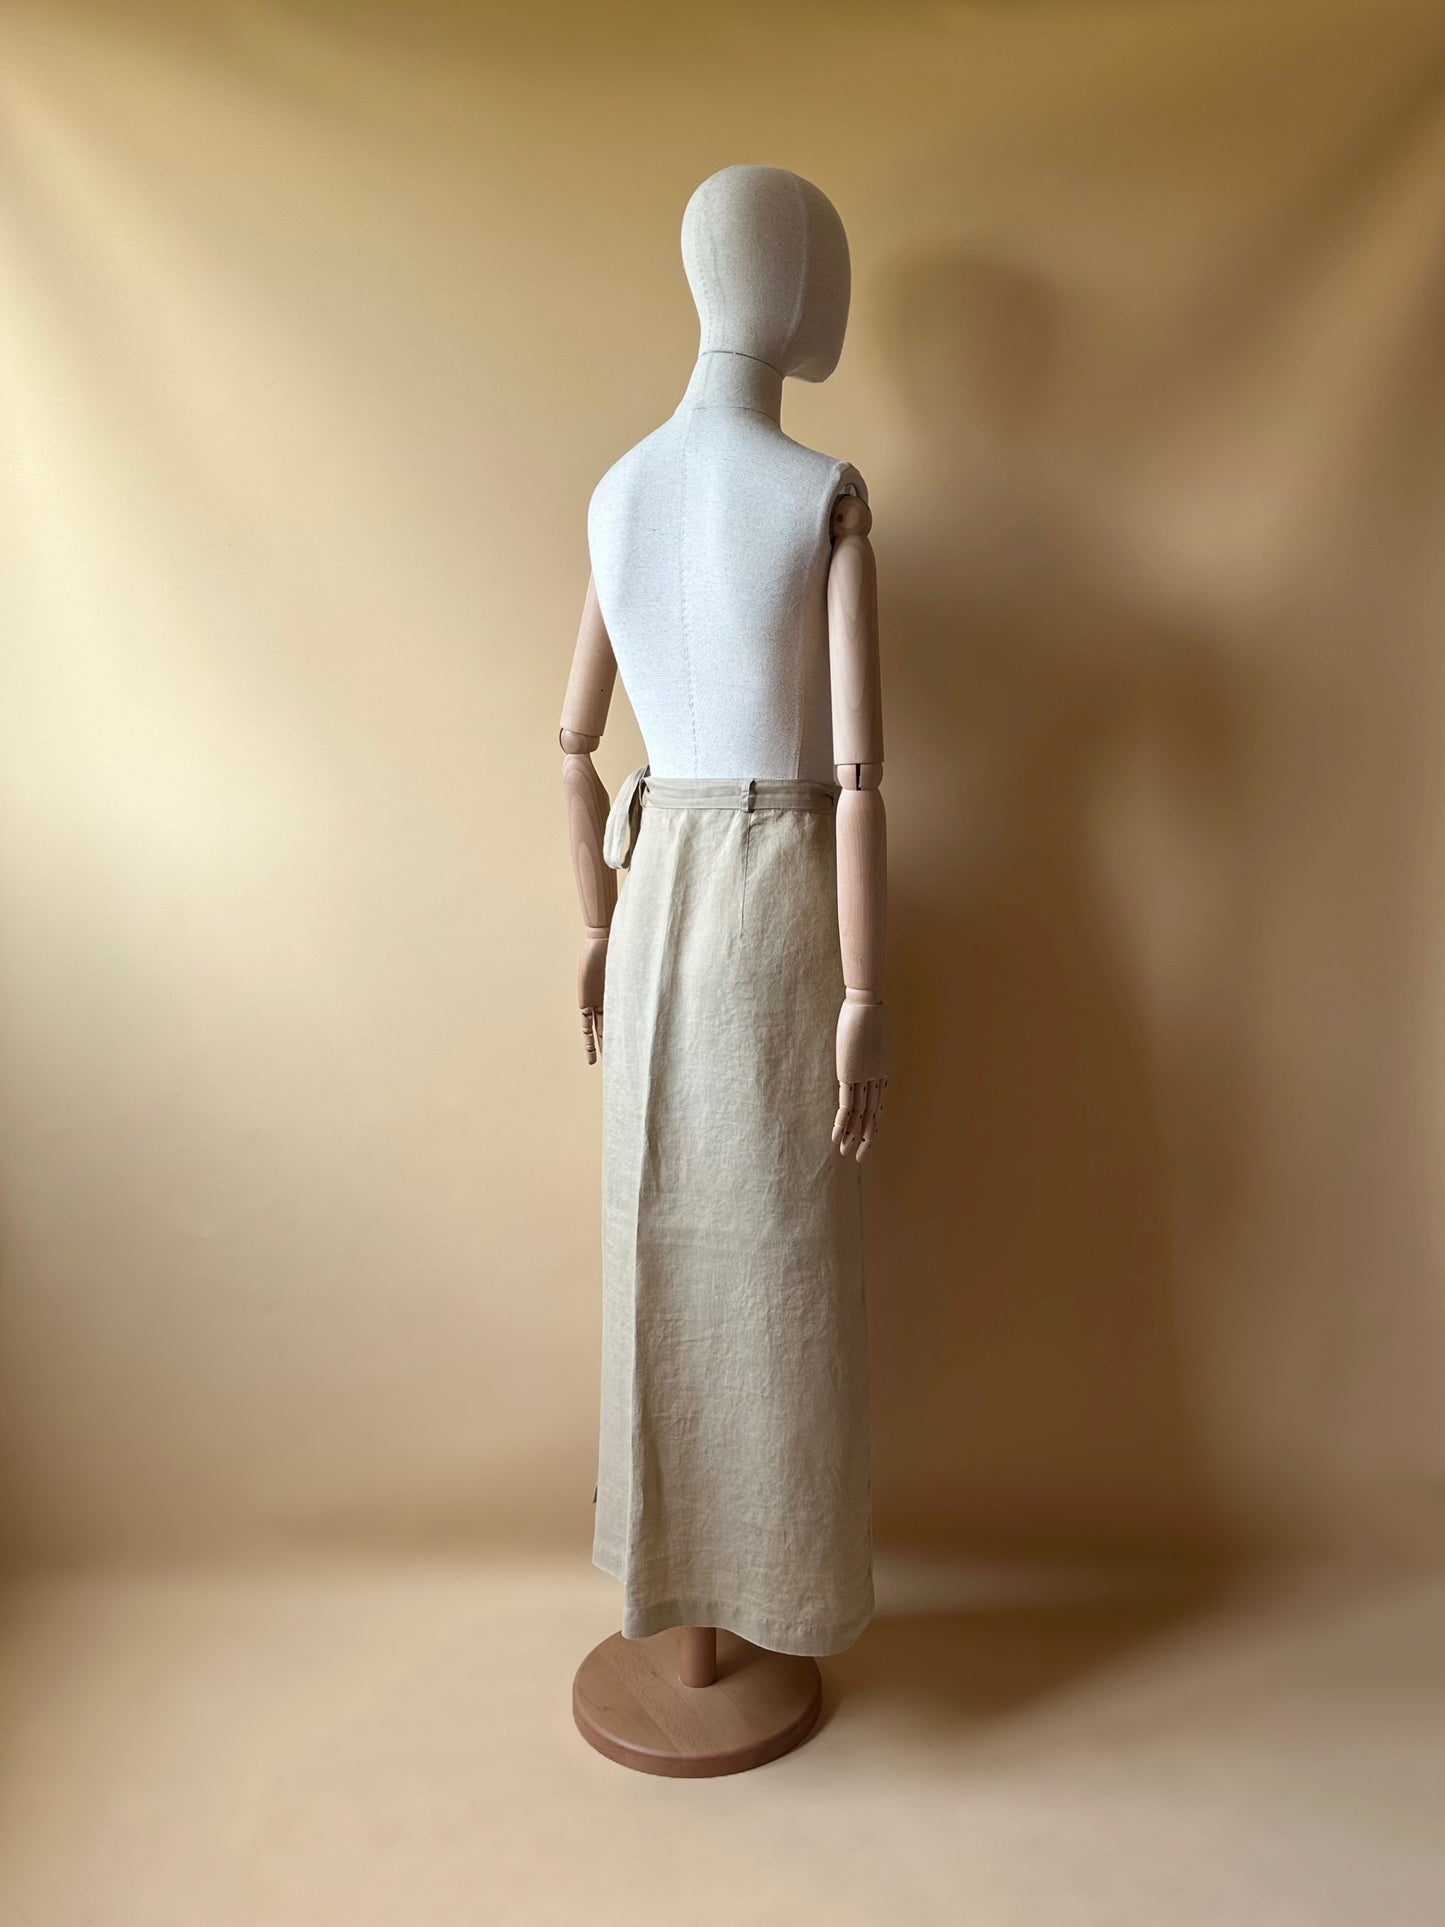 Deadstock 100% Linen Wrap Up Skirt